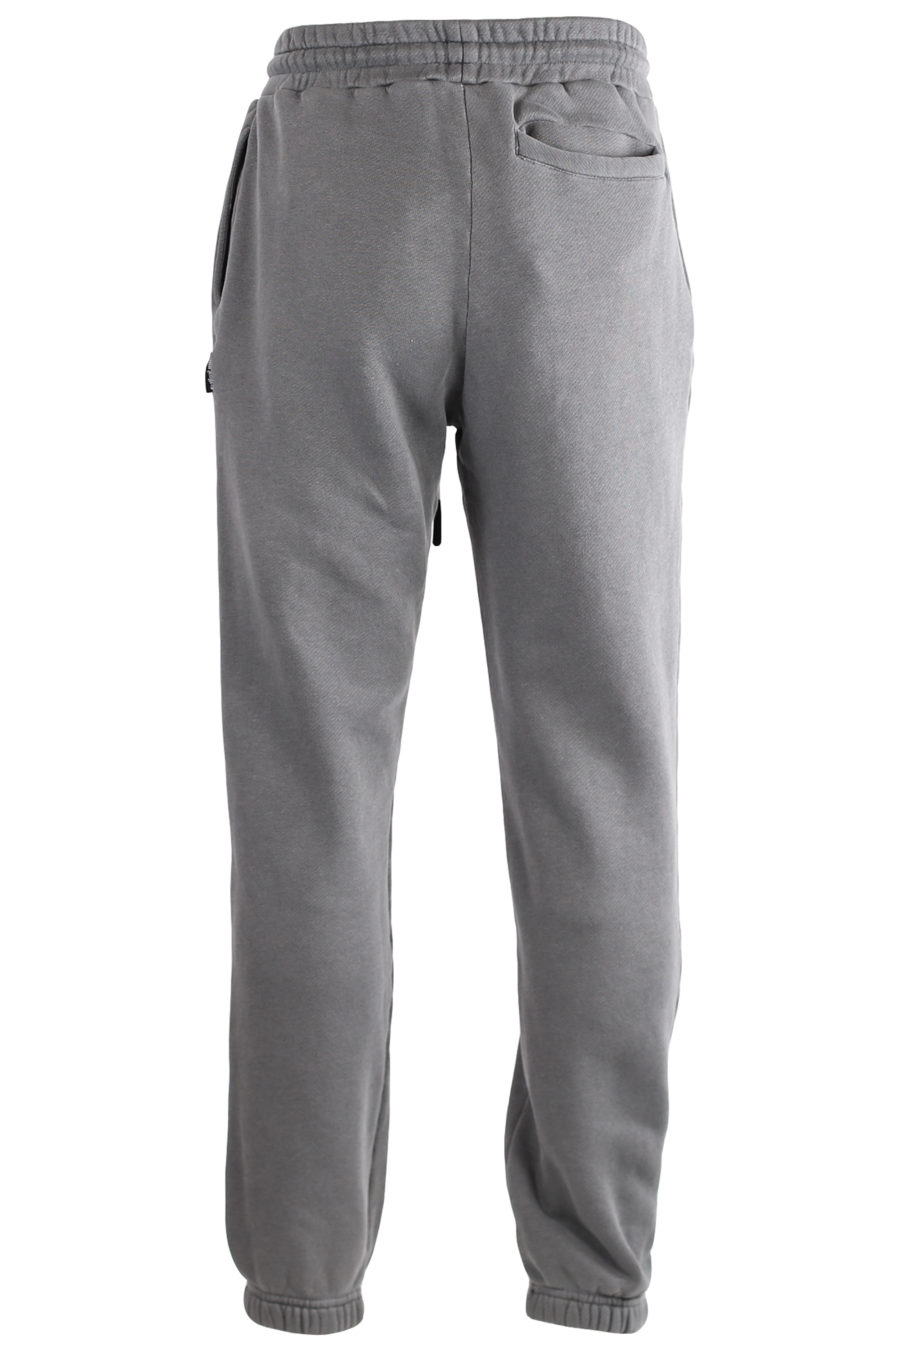 Pantalón de chándal gris con logotipo blanco - IMG 7271